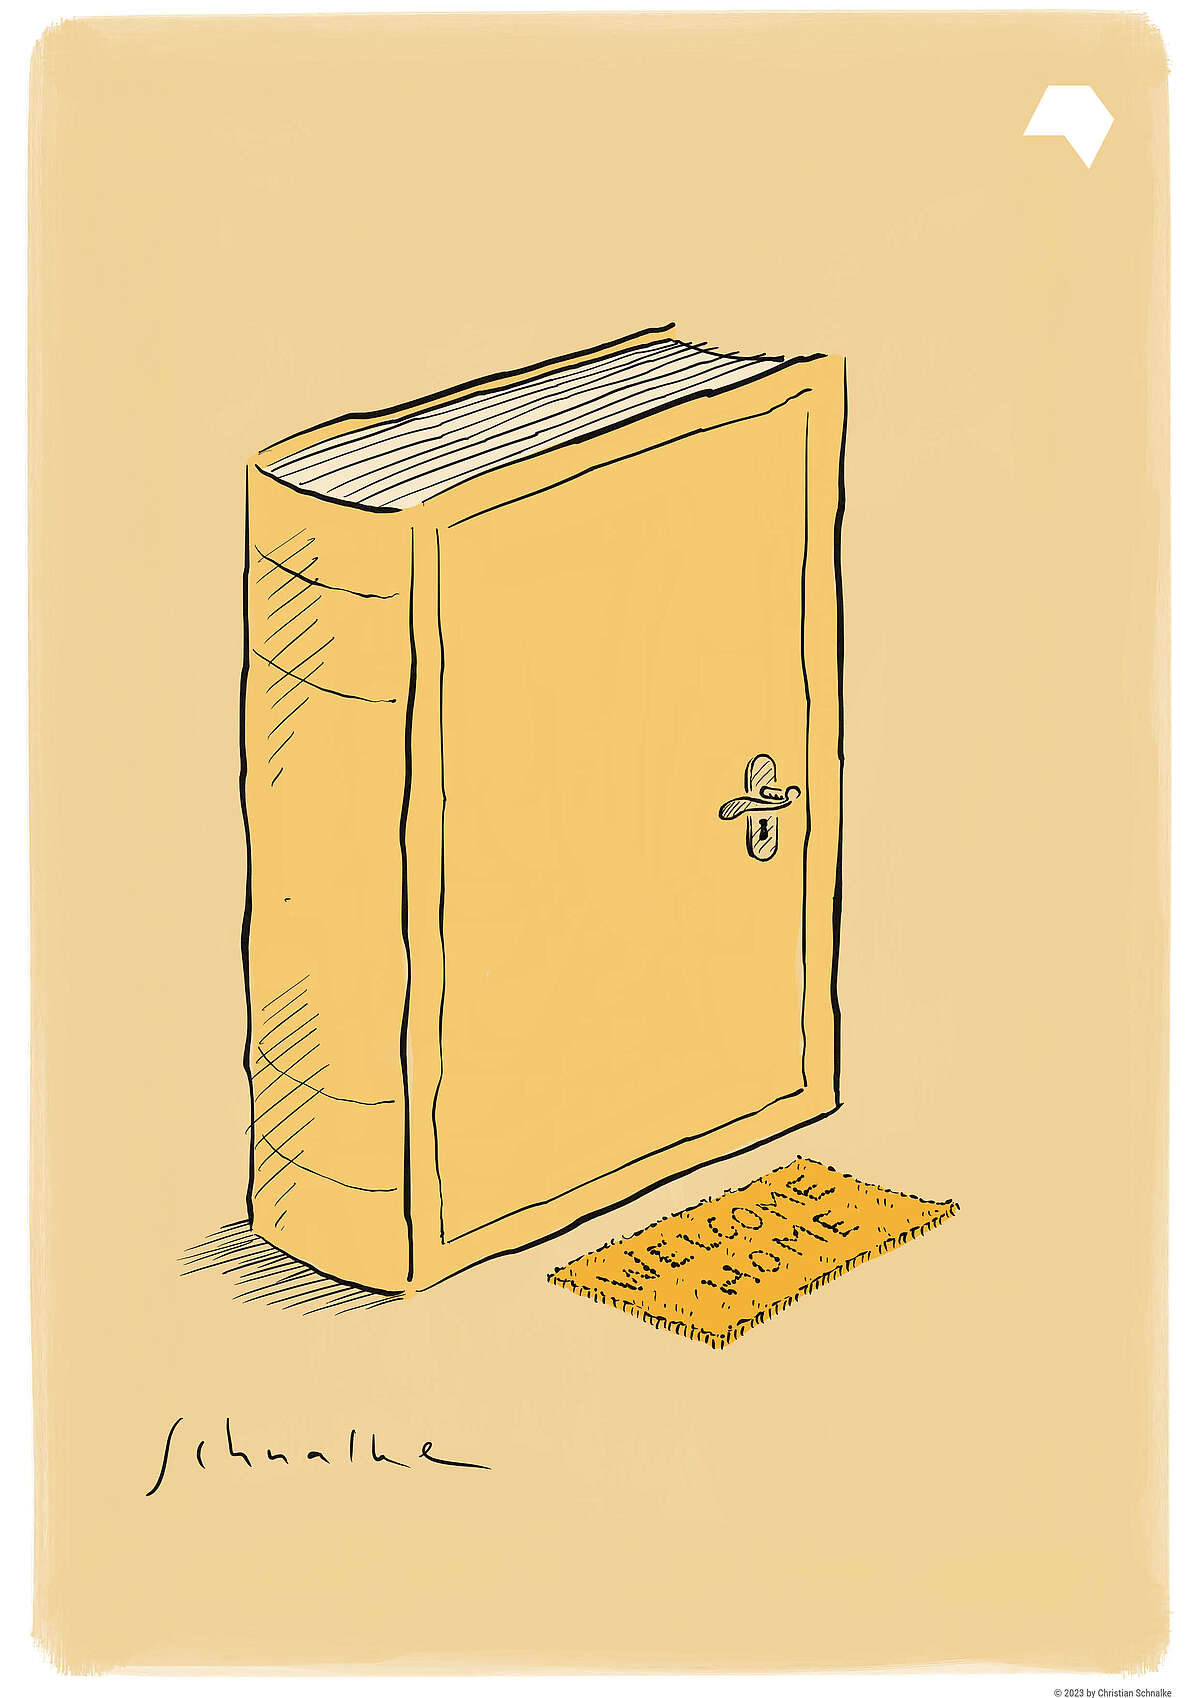 Zeichnung eines Buch mit Türgriff und einer Fußmatte mit dem Text "Welcome Home"